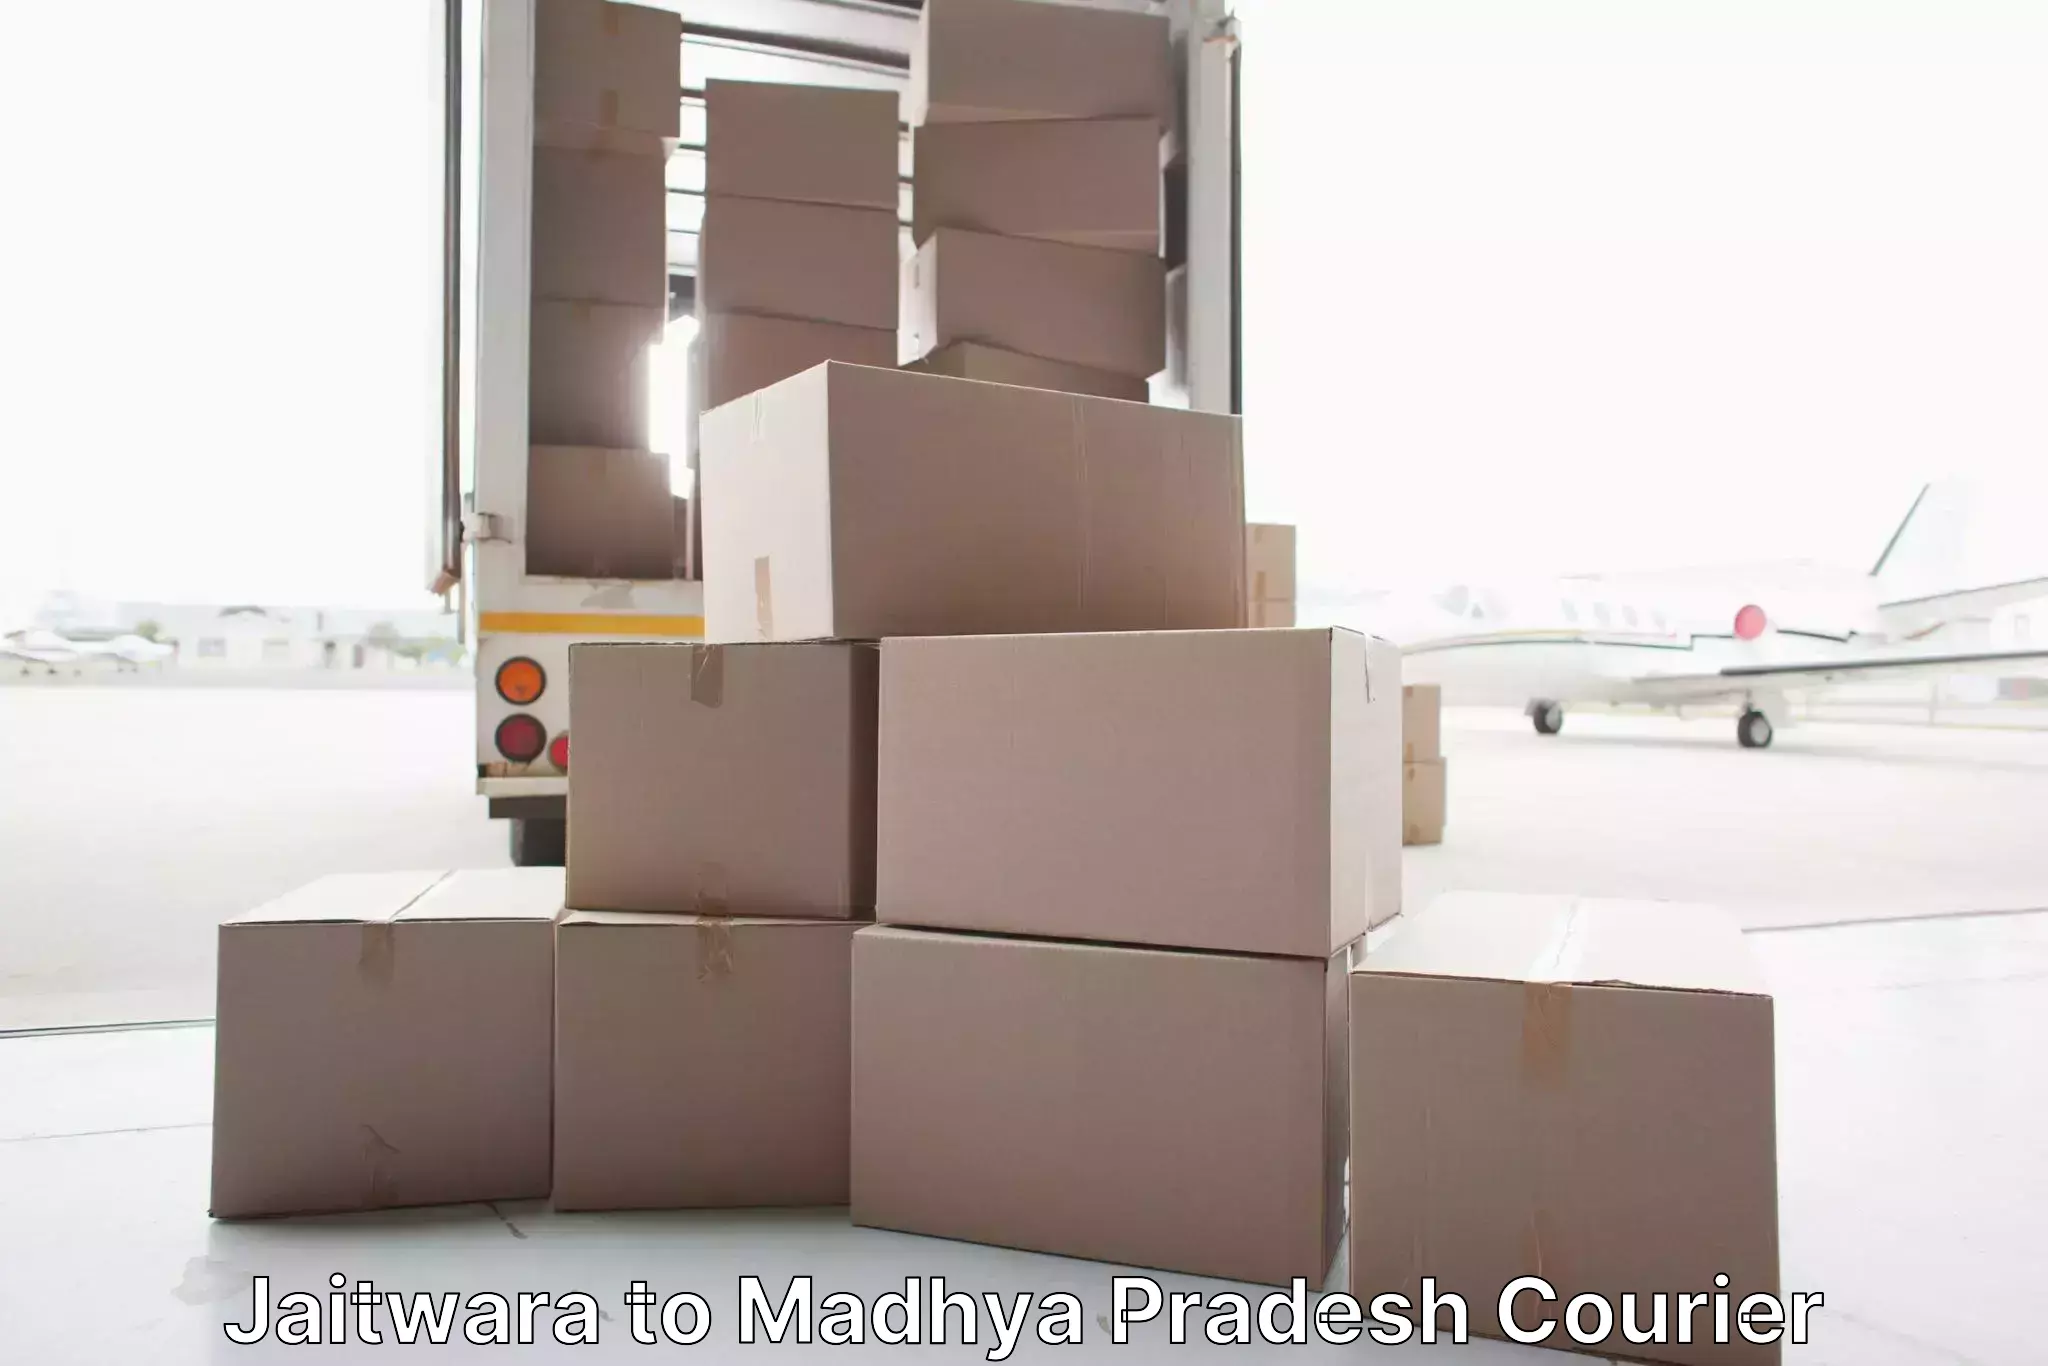 Furniture moving experts Jaitwara to Garh Rewa